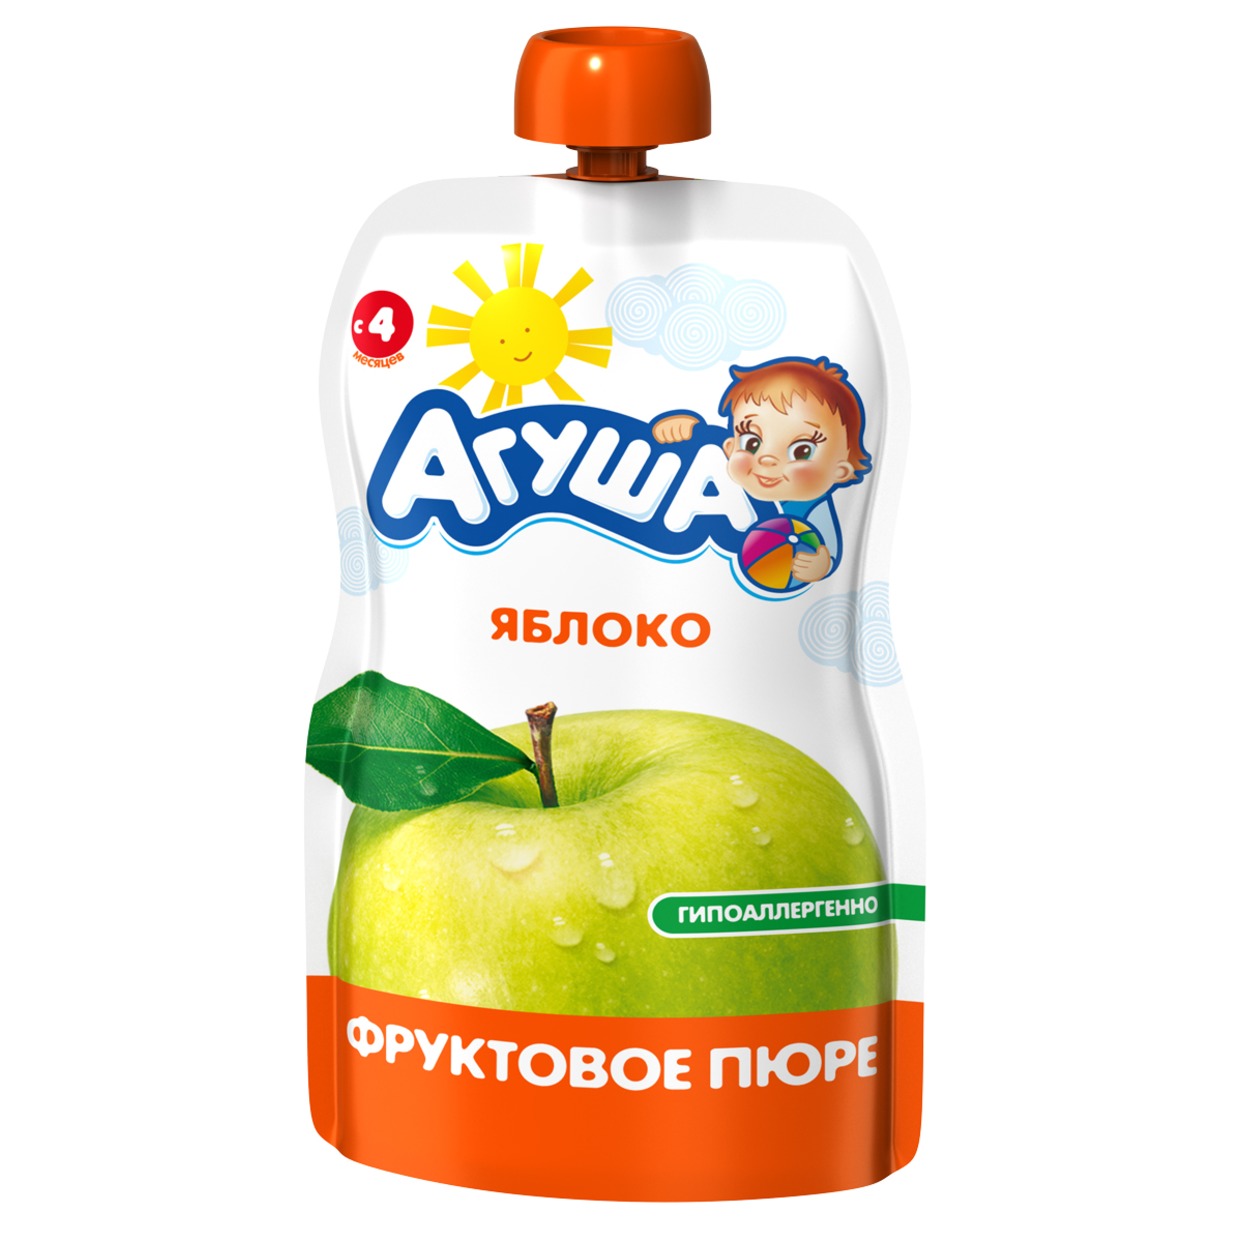 Пюре фруктовое "Агуша" Яблоко 0.0% 90г Pouch-pack. по акции в Пятерочке